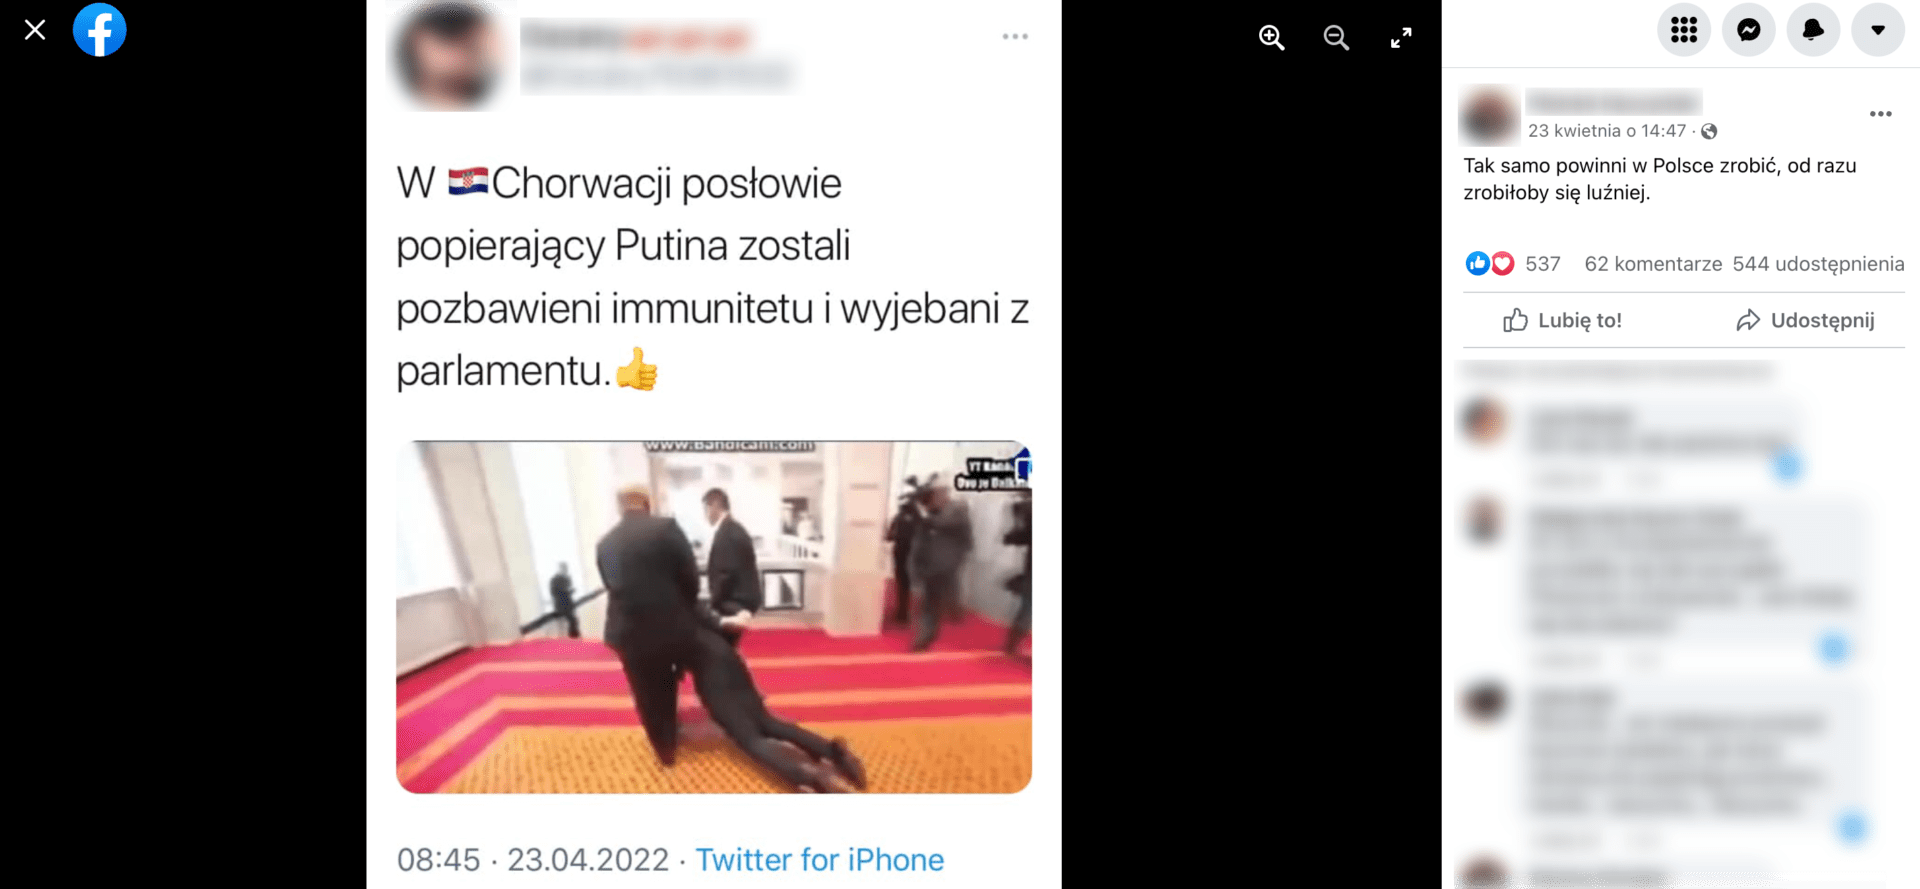 Zrzut ekranu z posta na Facebooku, w którym stwierdzono, że chorwaccy posłowie zostali pozbawieni immunitetu i wyrzuceni z parlamentu za popieranie Putina. Post zdobył ponad 500 reakcji, 62 komentarze i ponad 500 udostępnień.